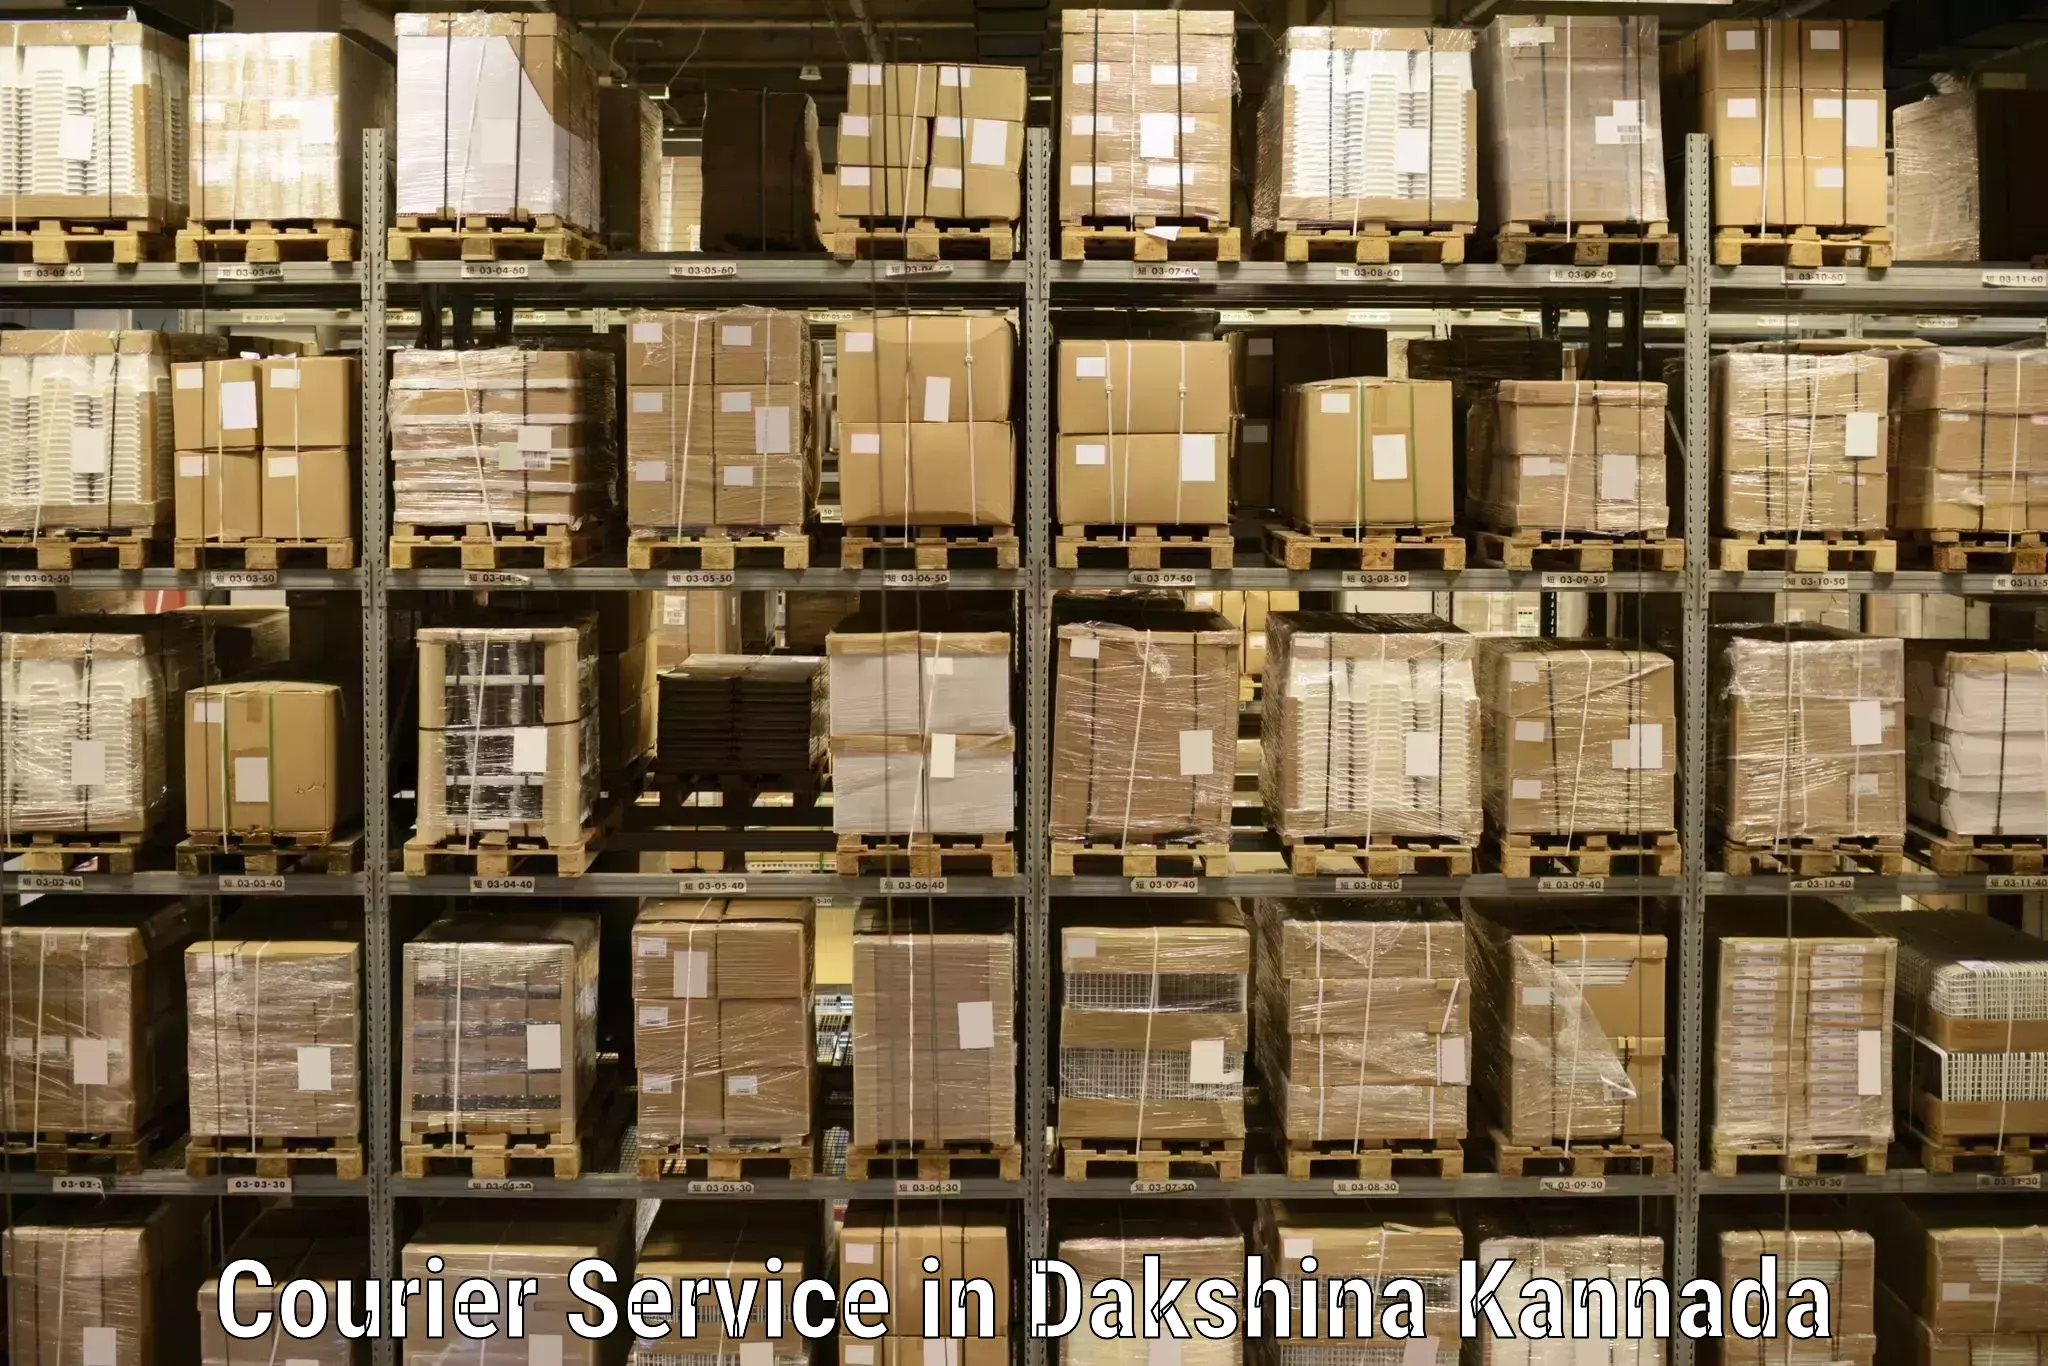 24/7 shipping services in Dakshina Kannada